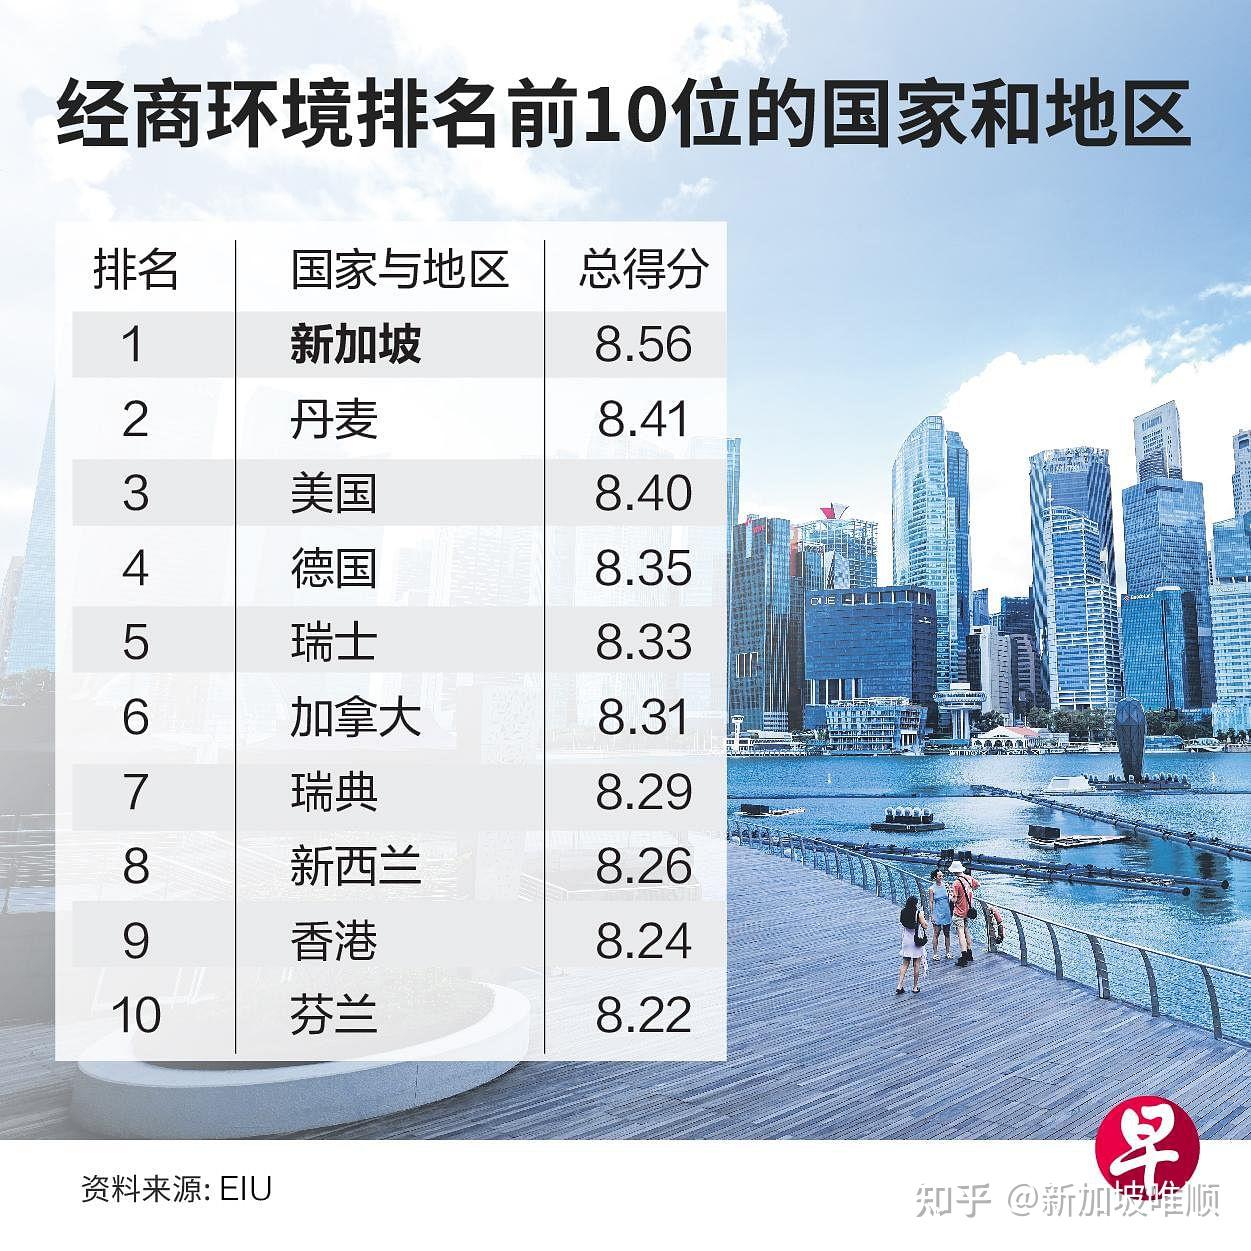 全球经商环境最佳的前十名中还包括一些西欧经济体,以及加拿大,香港